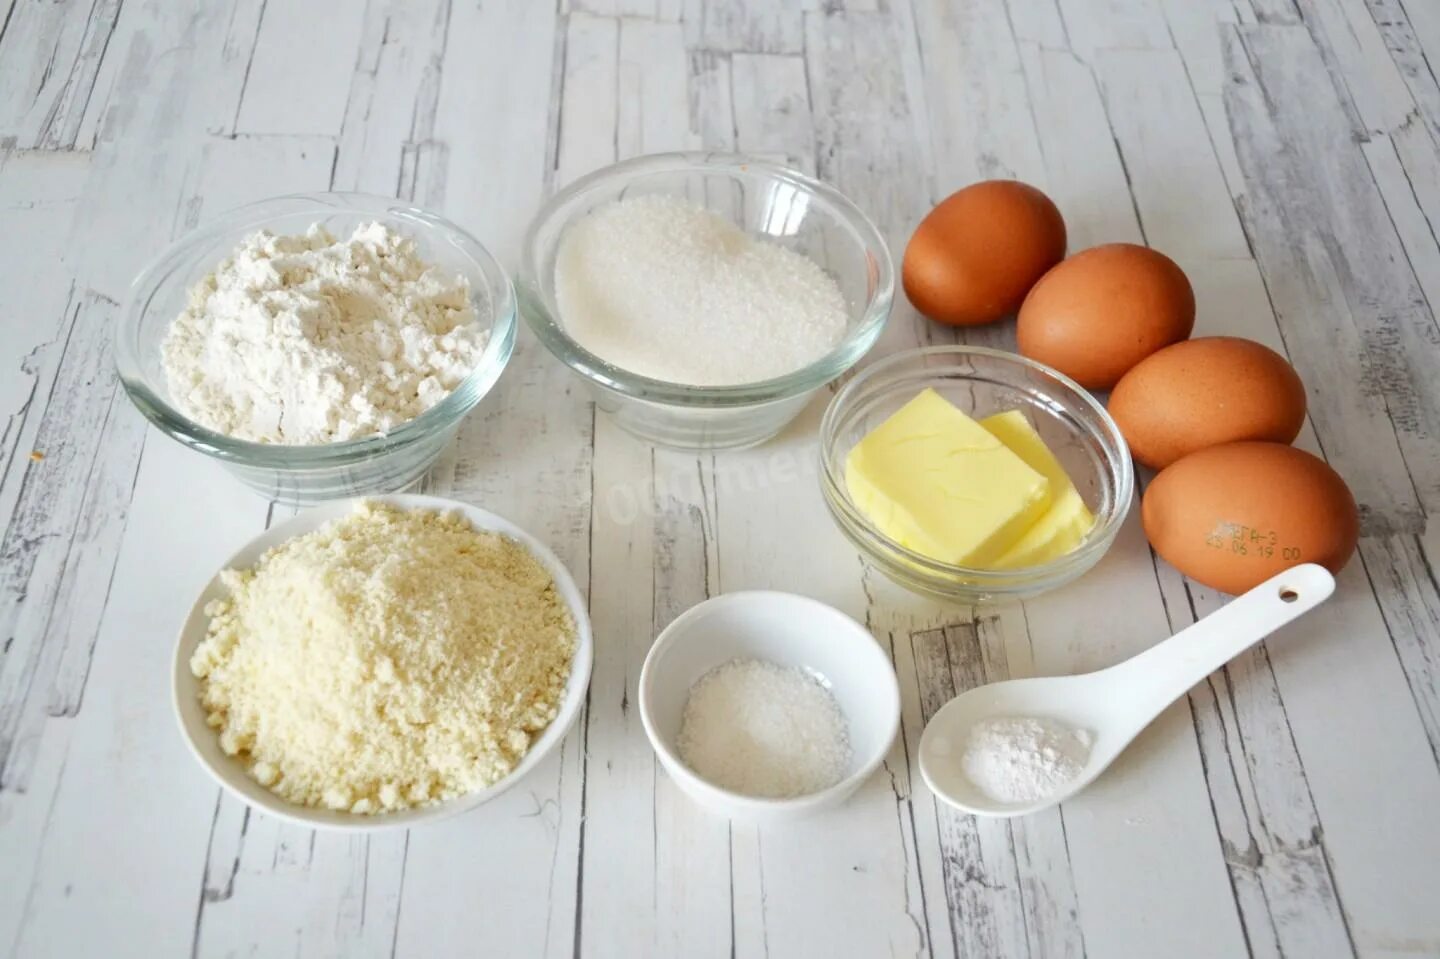 Вода мука сахар что можно приготовить. Ингредиенты для теста молоко яйца мука. Мука яйца ваниль. Мука,сахар,яйца,масло,корица,миндаль. Шпинат яйца мука масло.